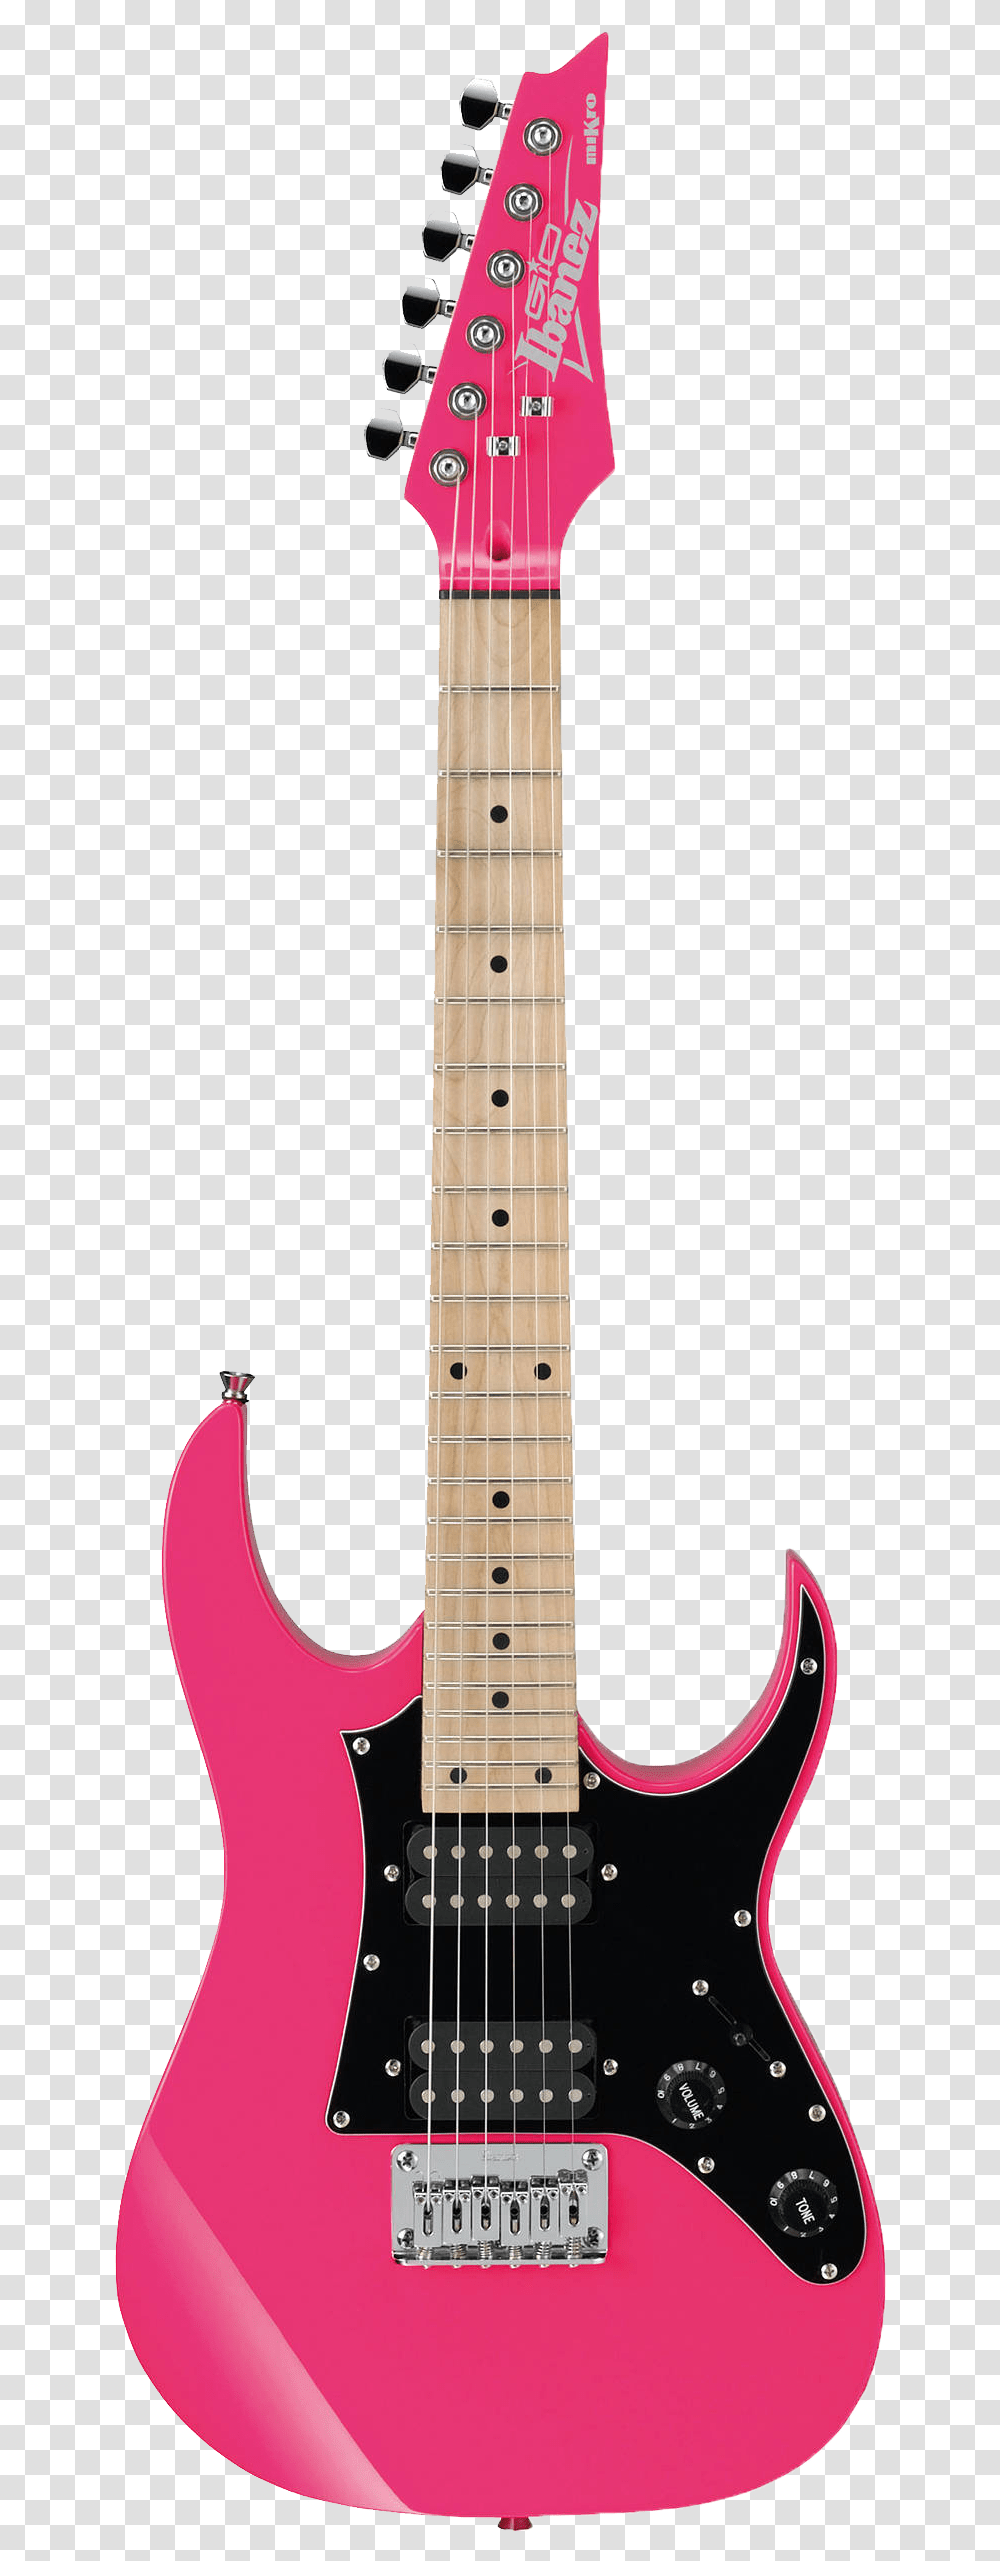 Electric Guitar Photo Pink Electric 3 4 Guitar, Leisure Activities, Musical Instrument, Bass Guitar Transparent Png